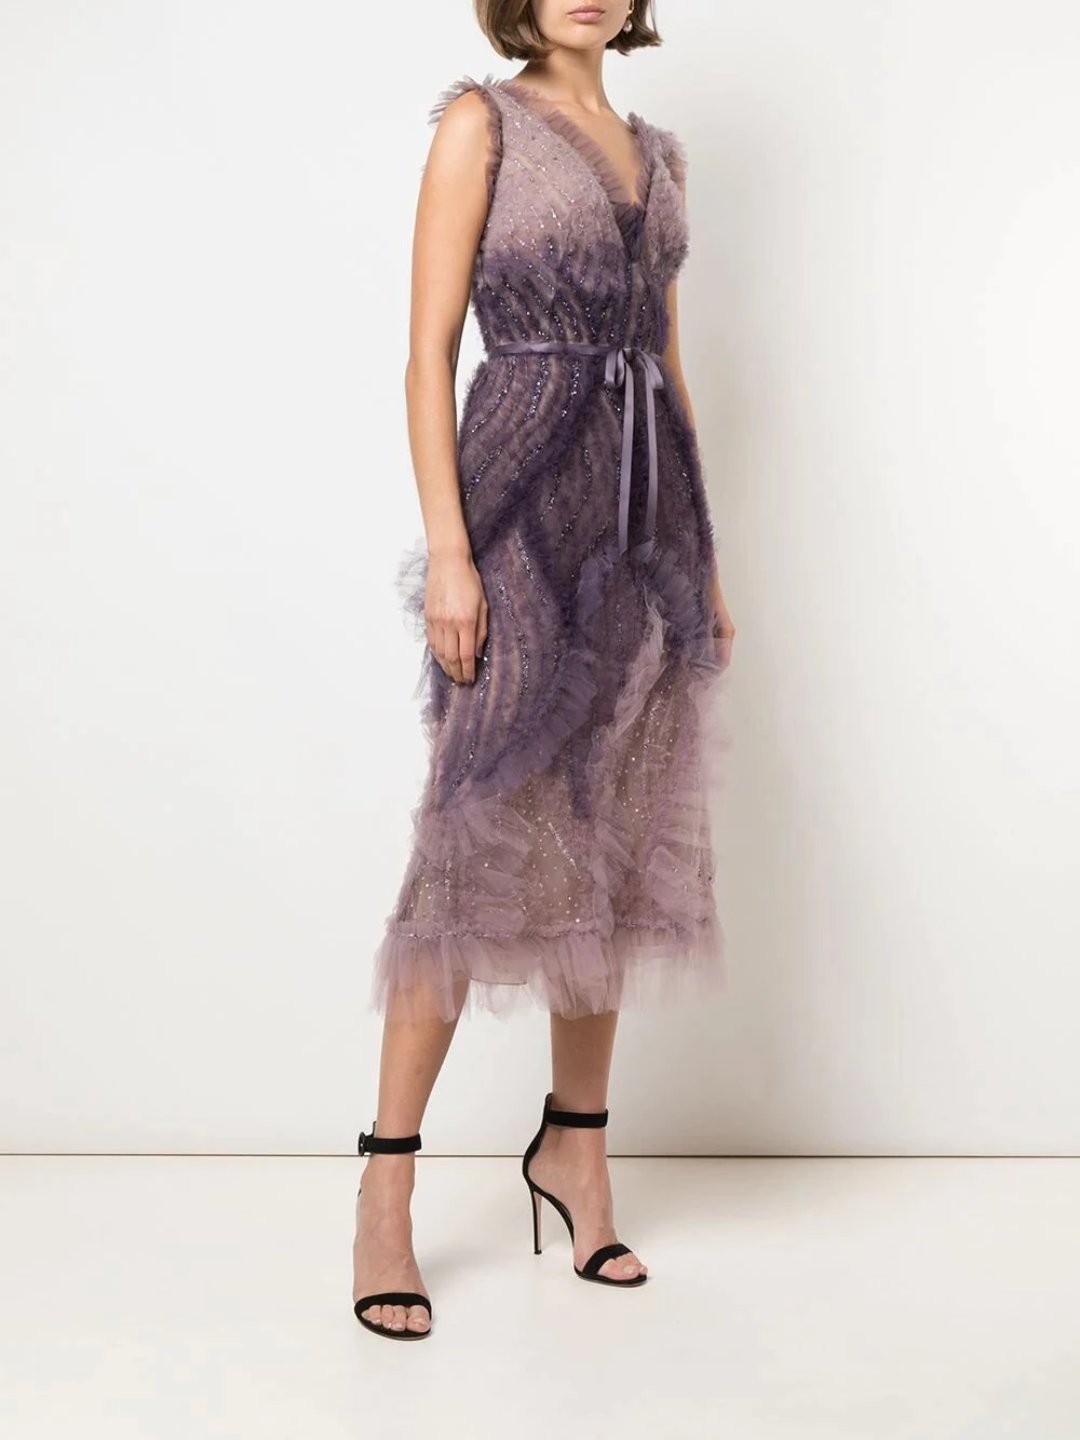 Deep V-Neckline Textured Cocktail Dress – Marchesa